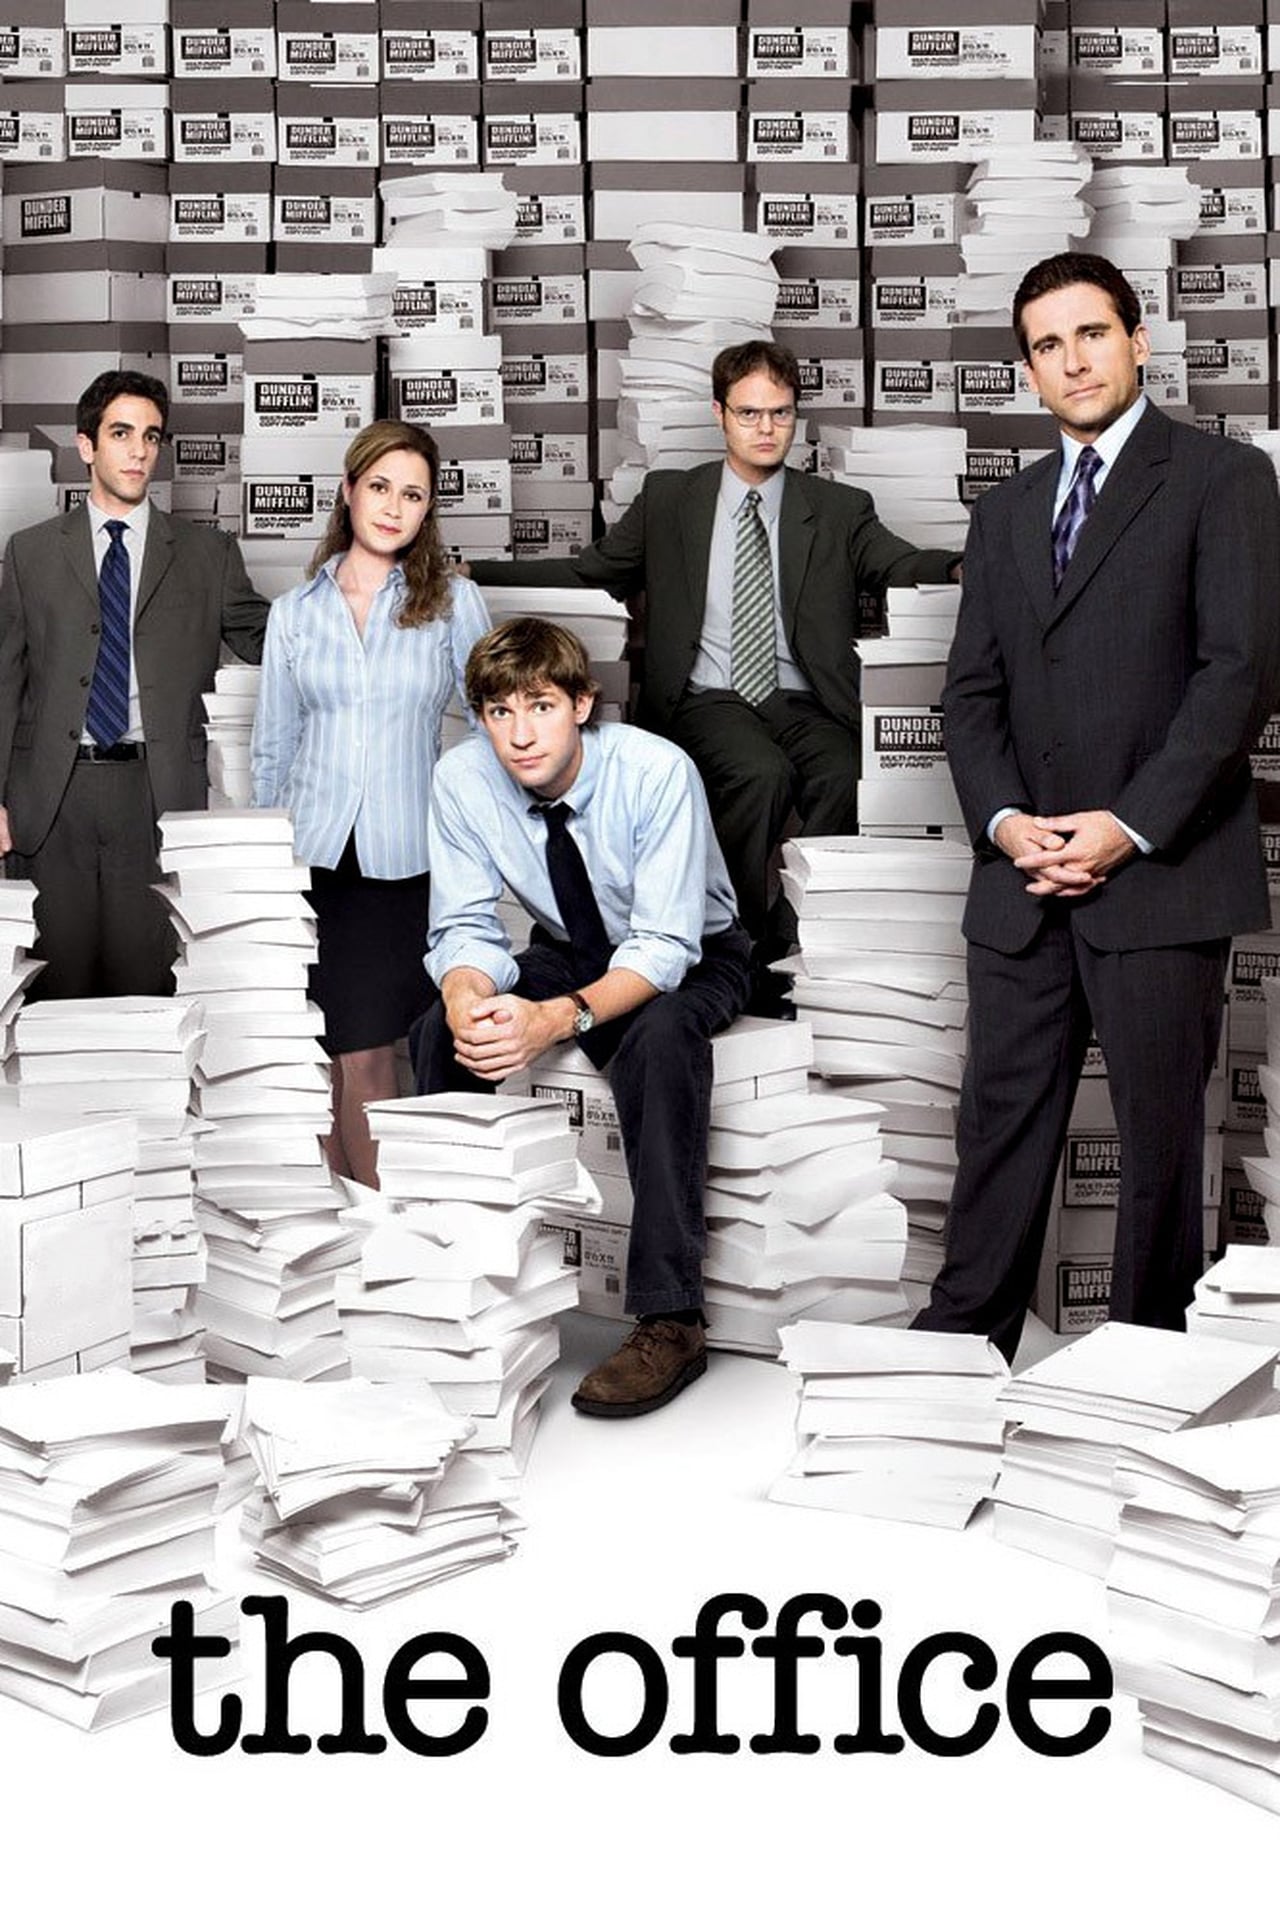 The Office (US) Season 4